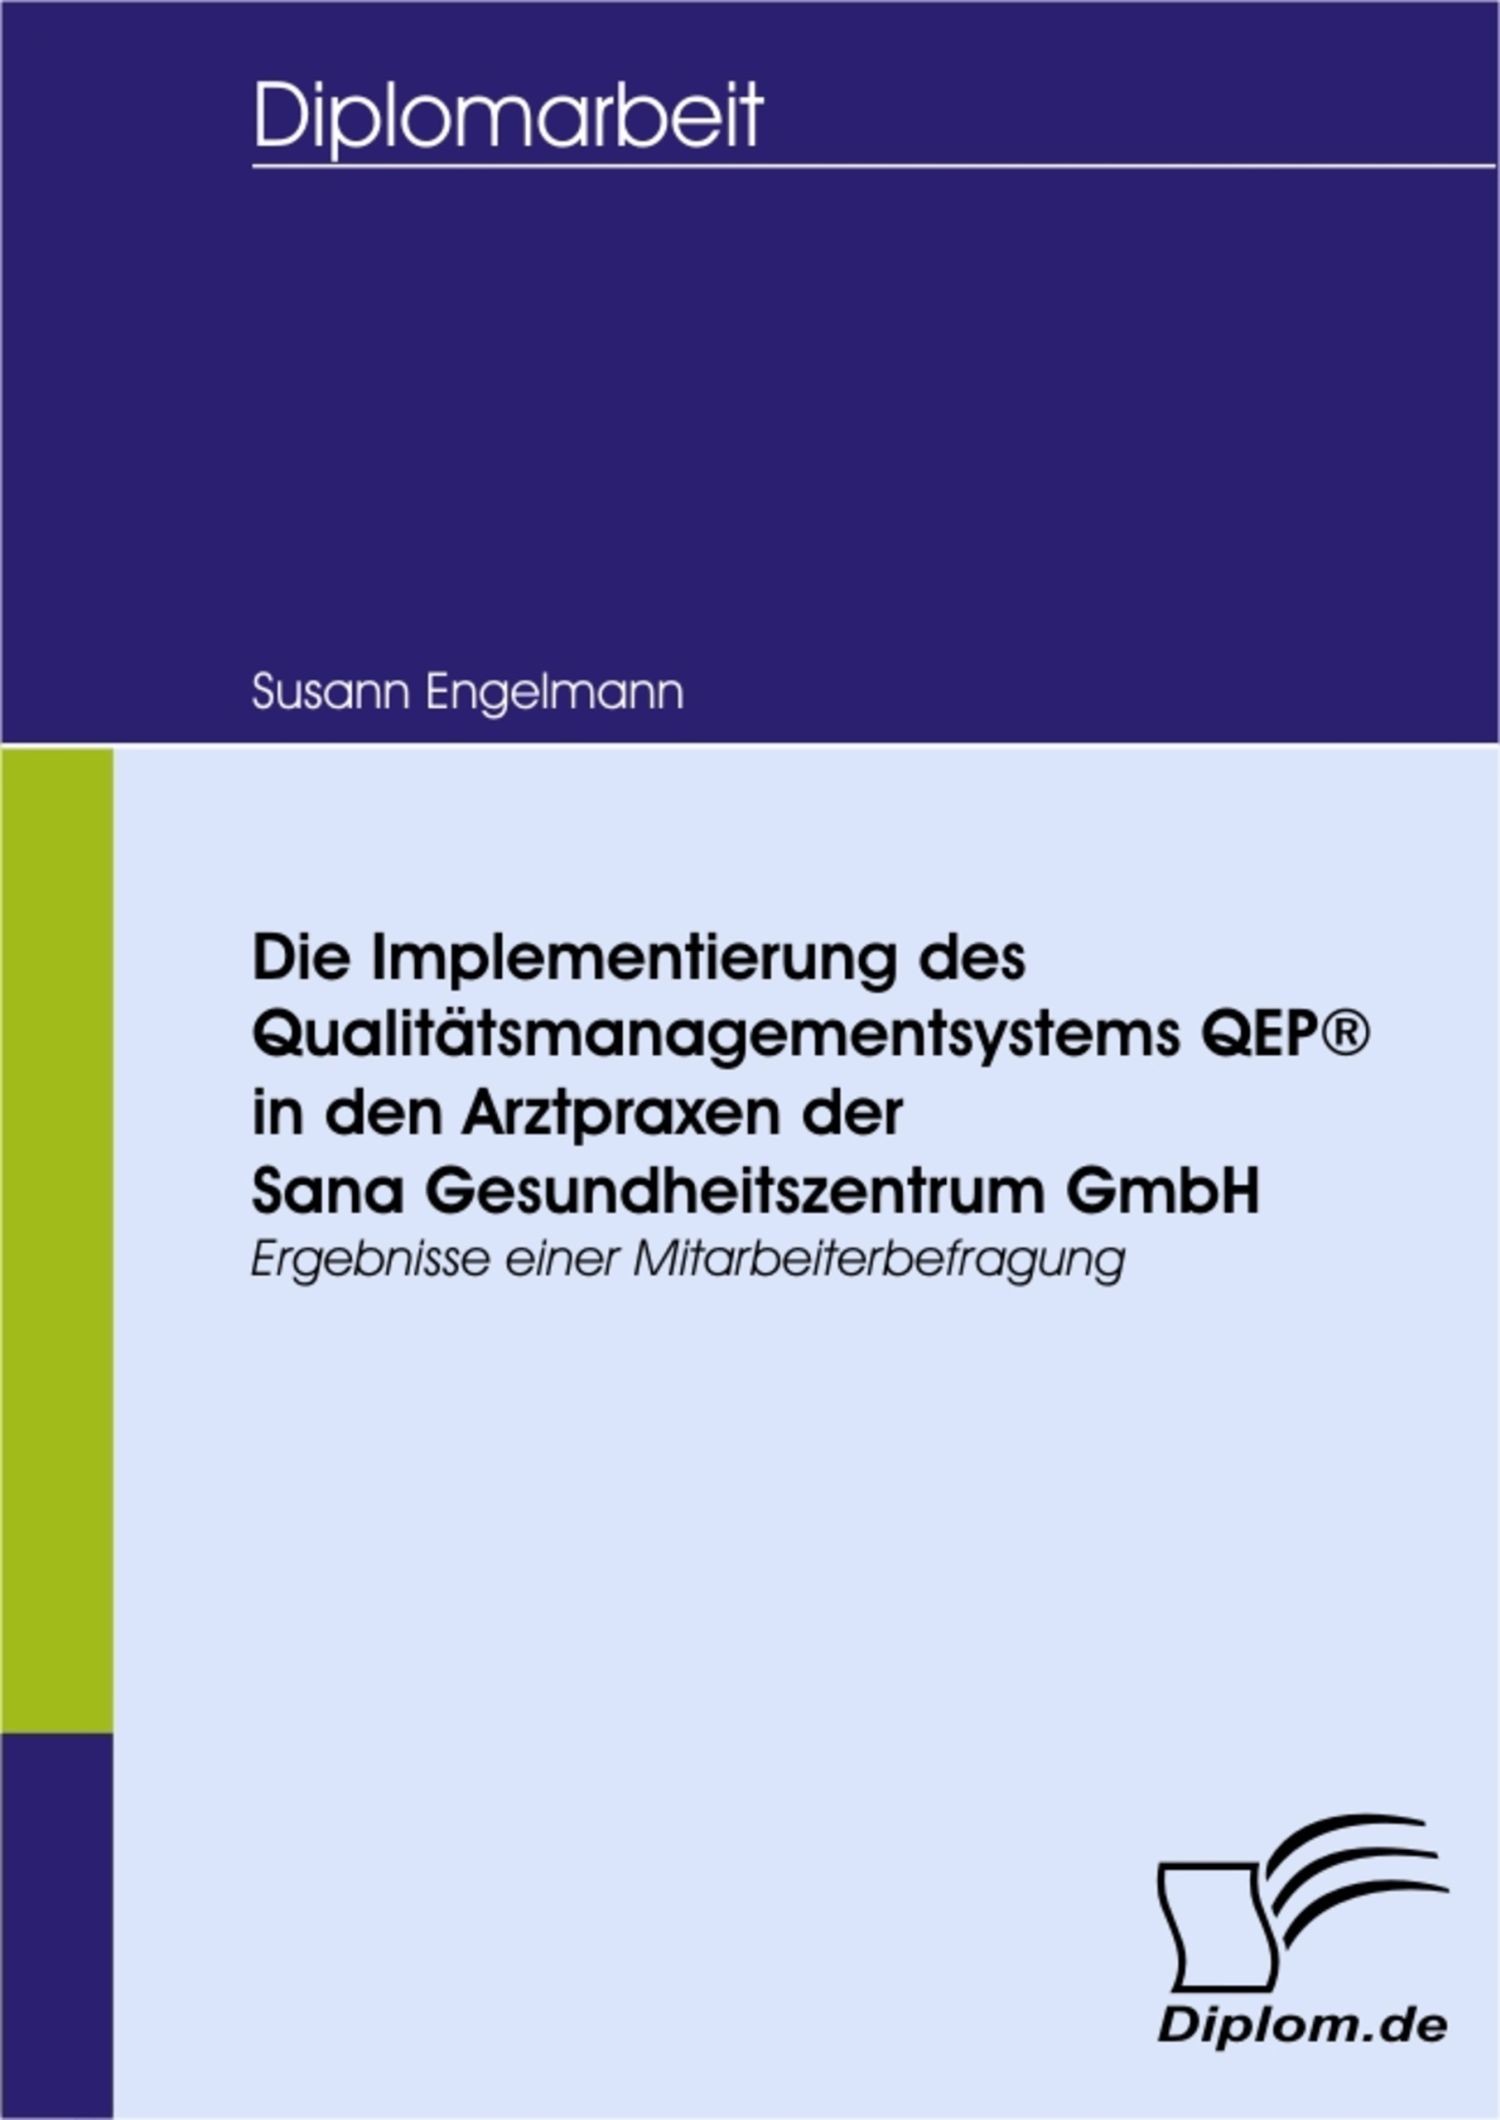 Die Implementierung des Qualitätsmanagementsystems QEP® in den Arztpraxen der Sana Gesundheitszentrum GmbH